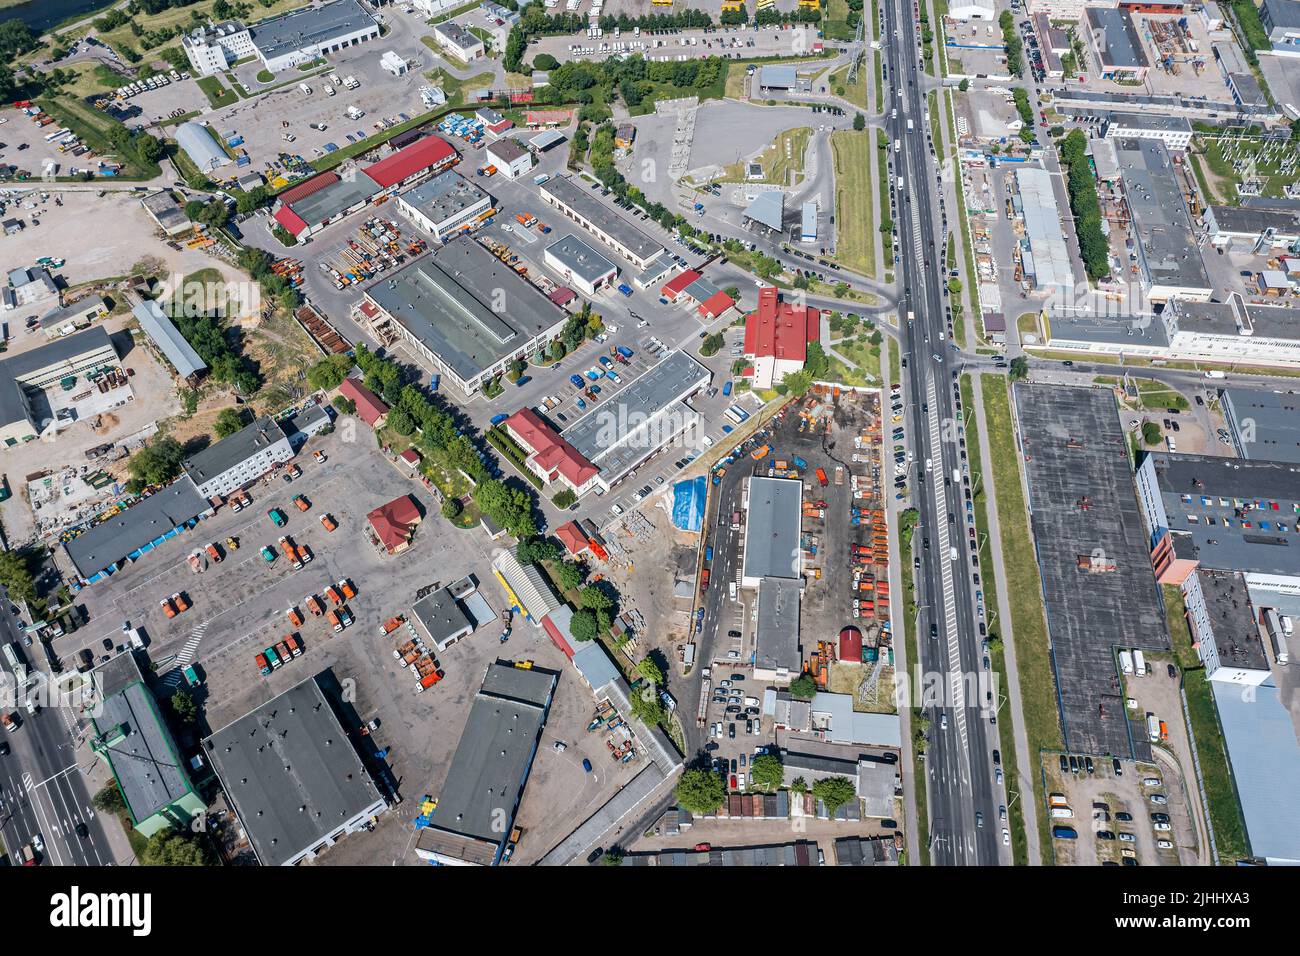 vista aérea del área industrial urbana. fábricas de fabricación, almacenes y estaciones de servicio de automóviles. Foto de stock